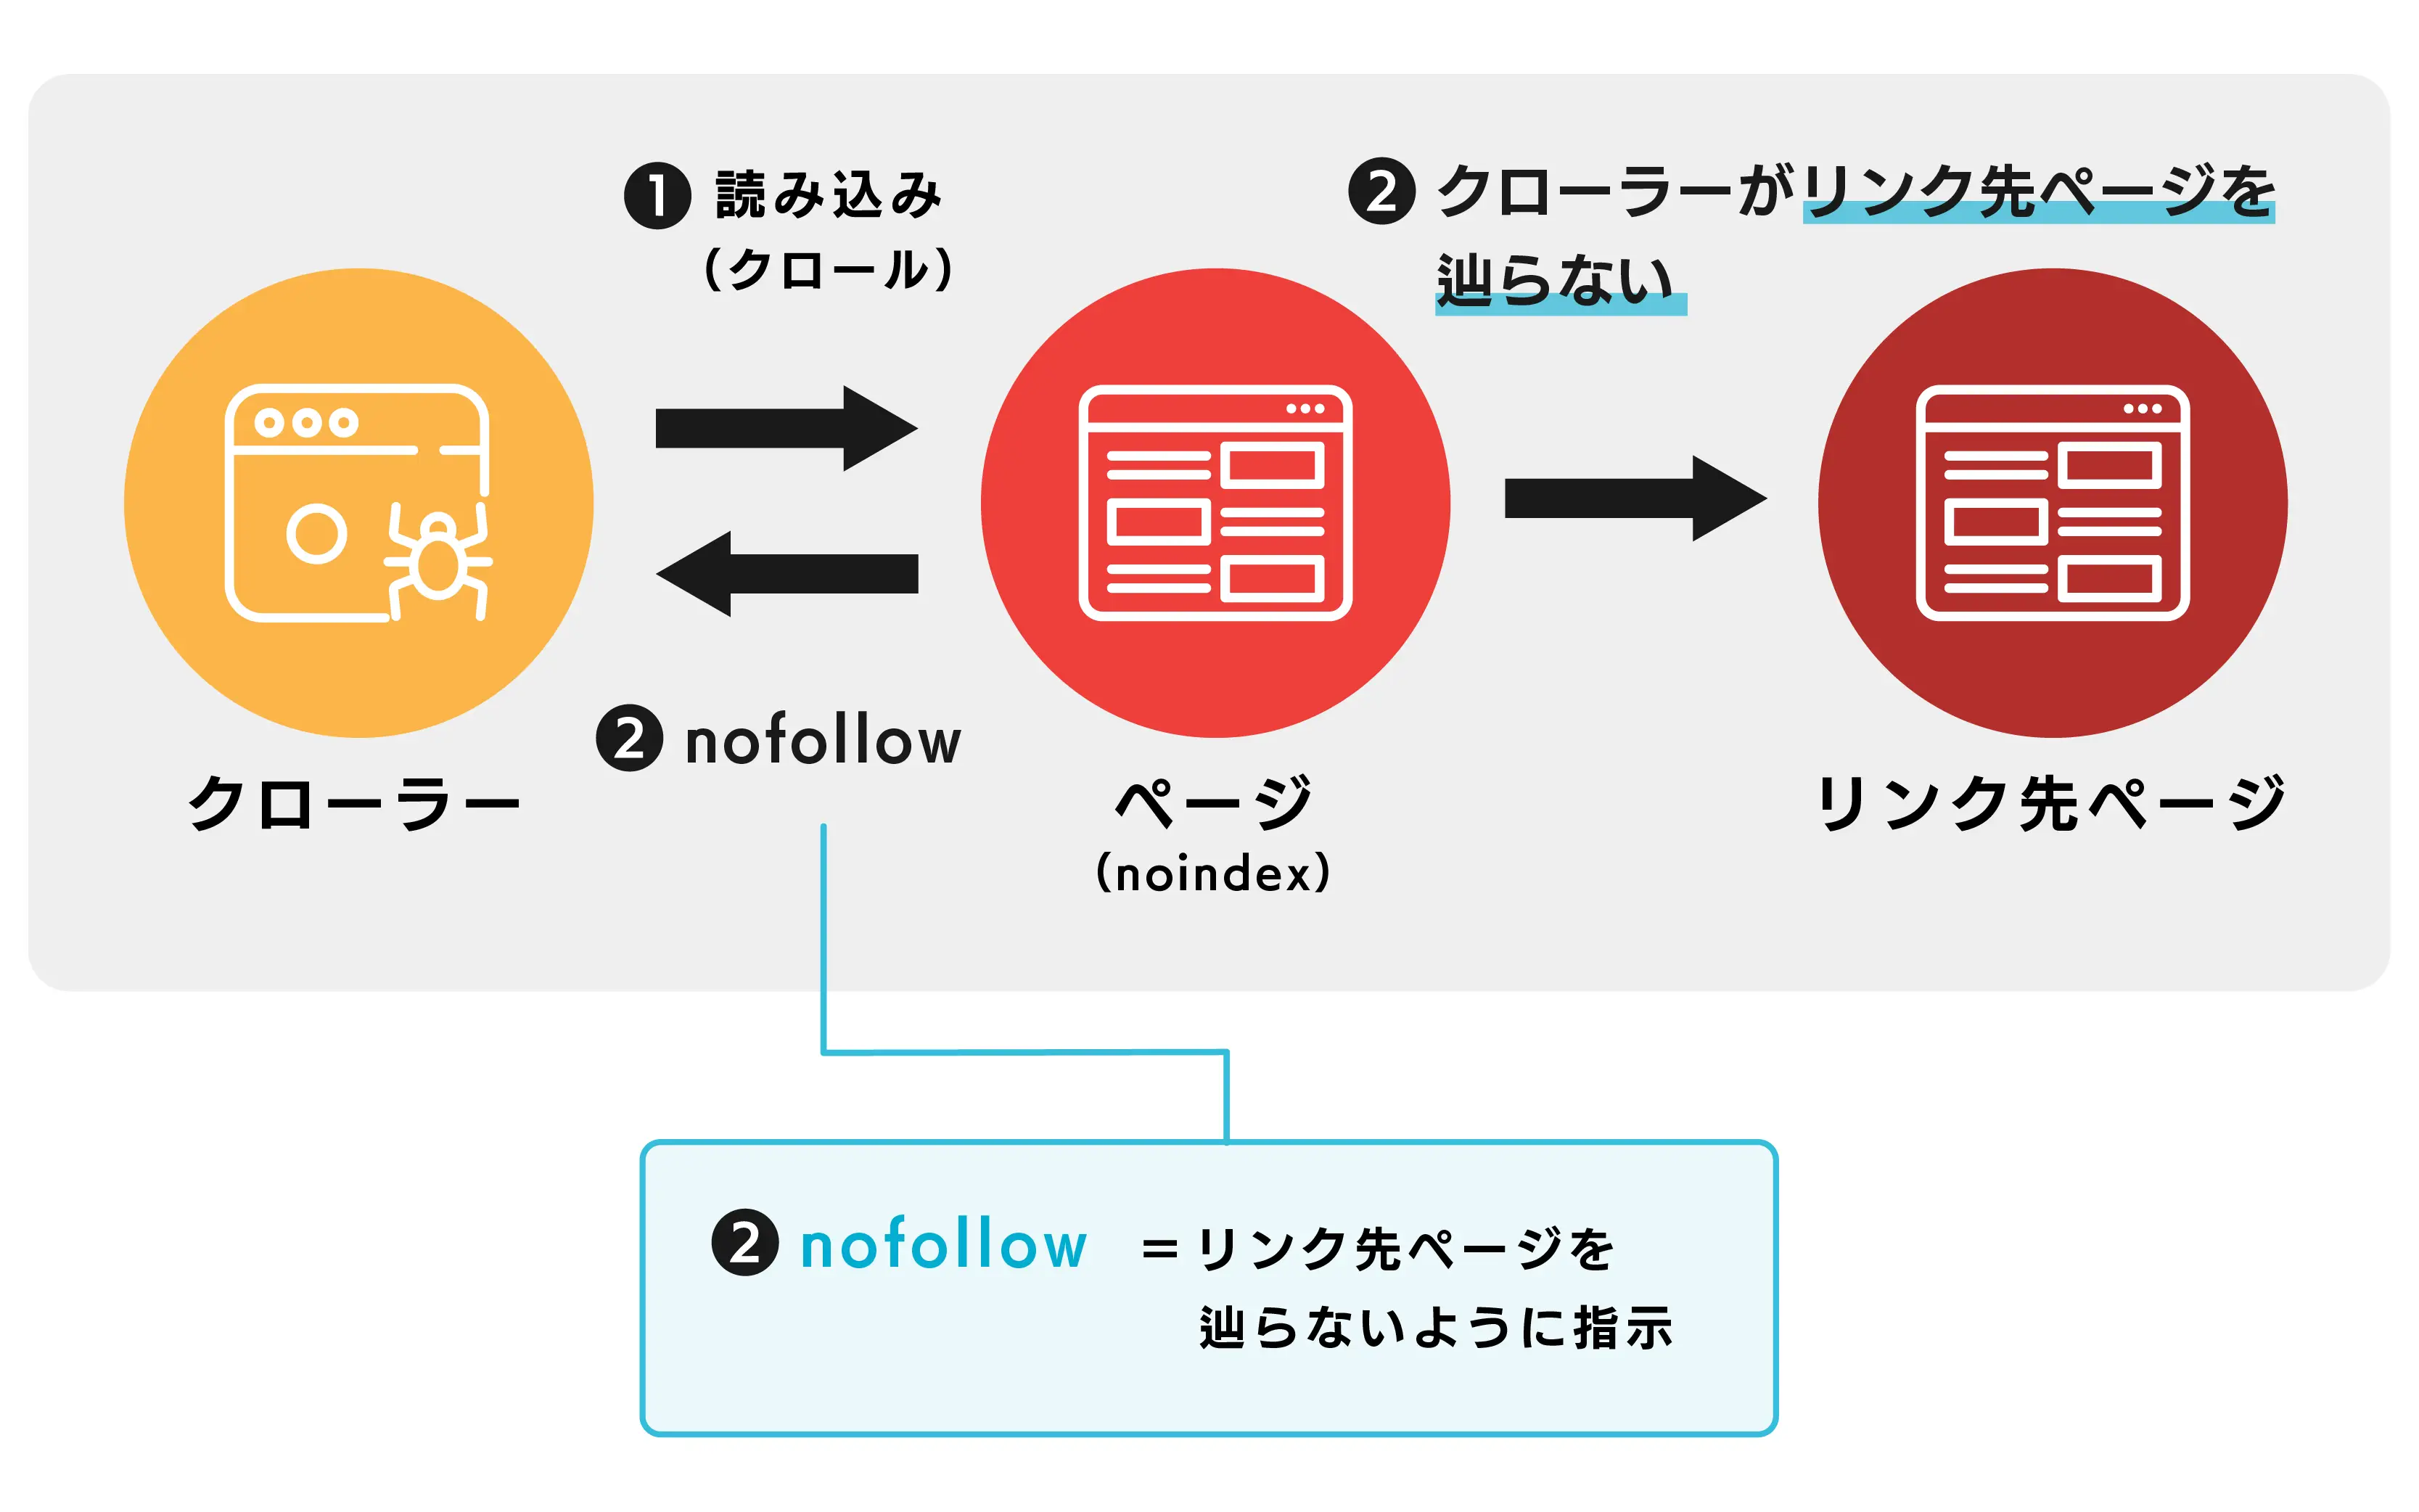 クローラーがnofollow指示に従ってリンク先ページを辿らないプロセスを示す図